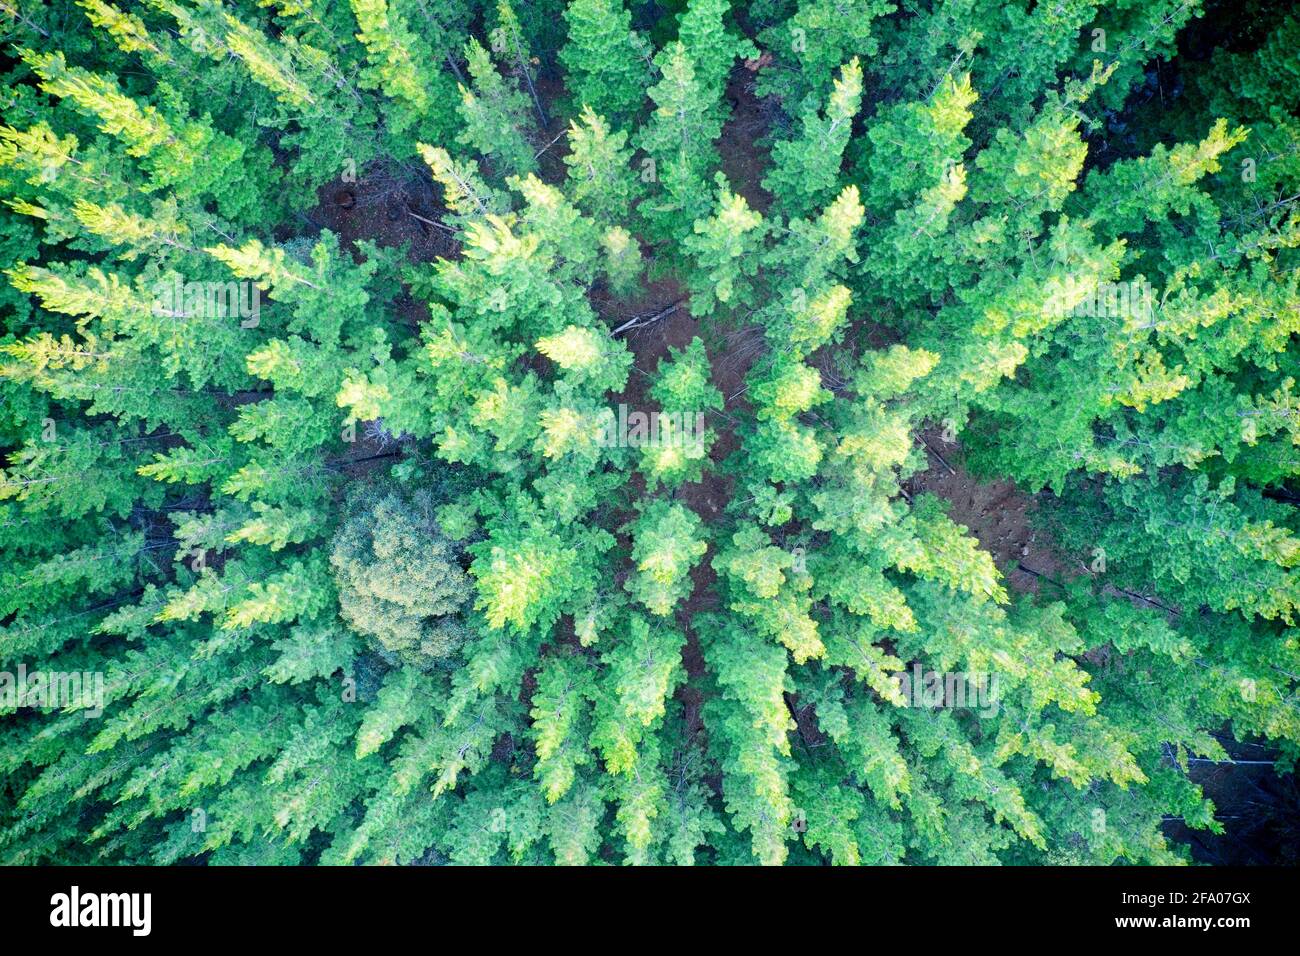 Vue aérienne de la forêt de pins formant des patrons dans la nature Balingup, Australie occidentale Banque D'Images